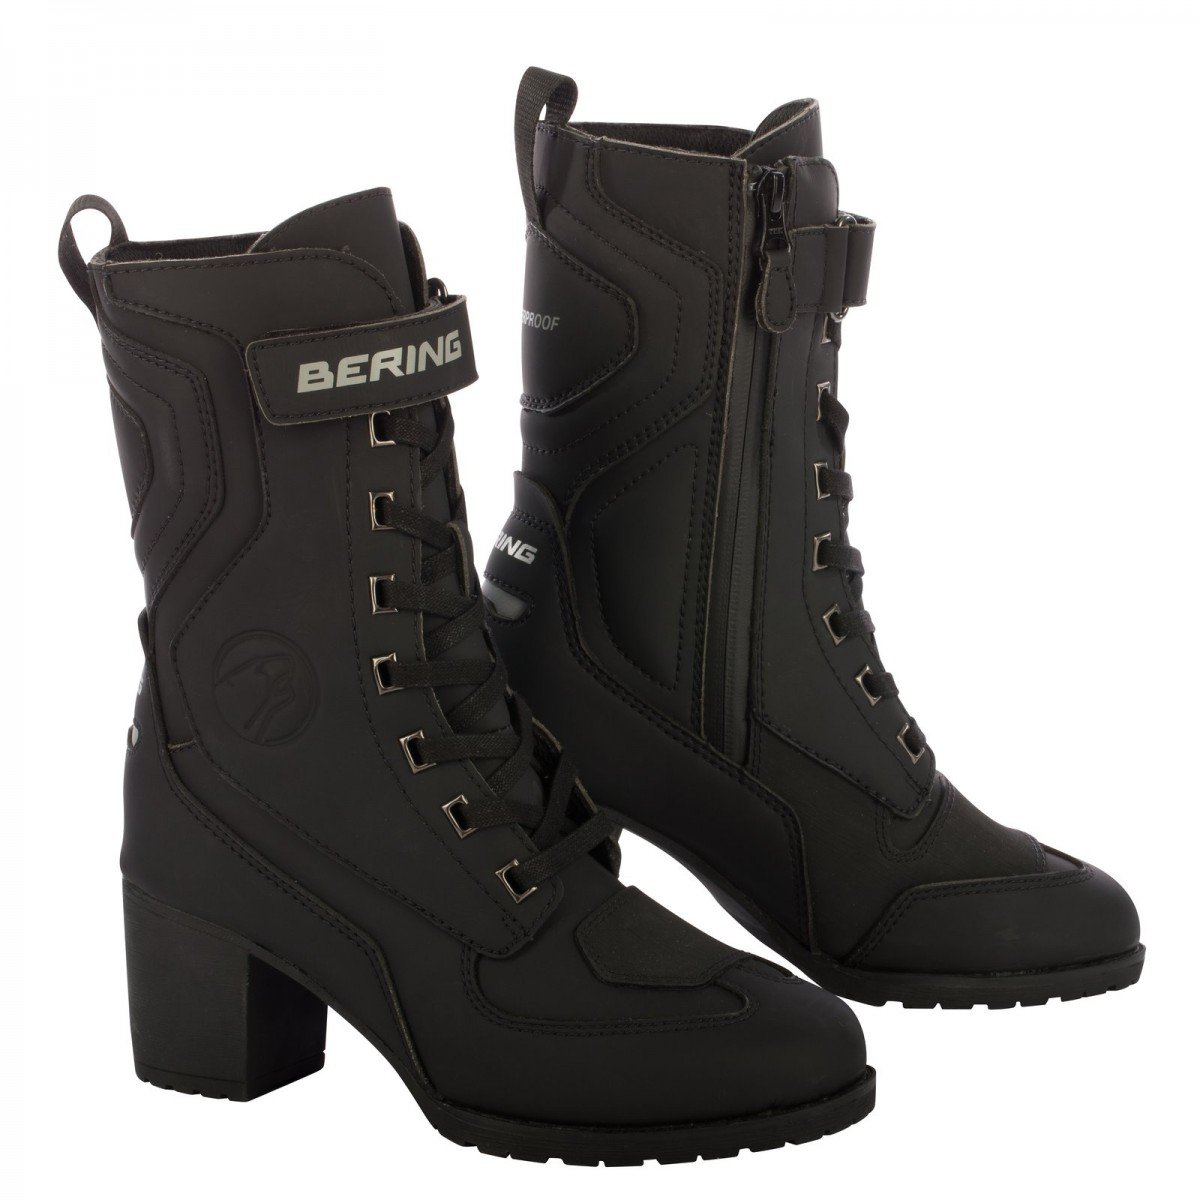 Image of Bering Lady Leonarda 2 Shoes Black Size 40 ID 3660815165300